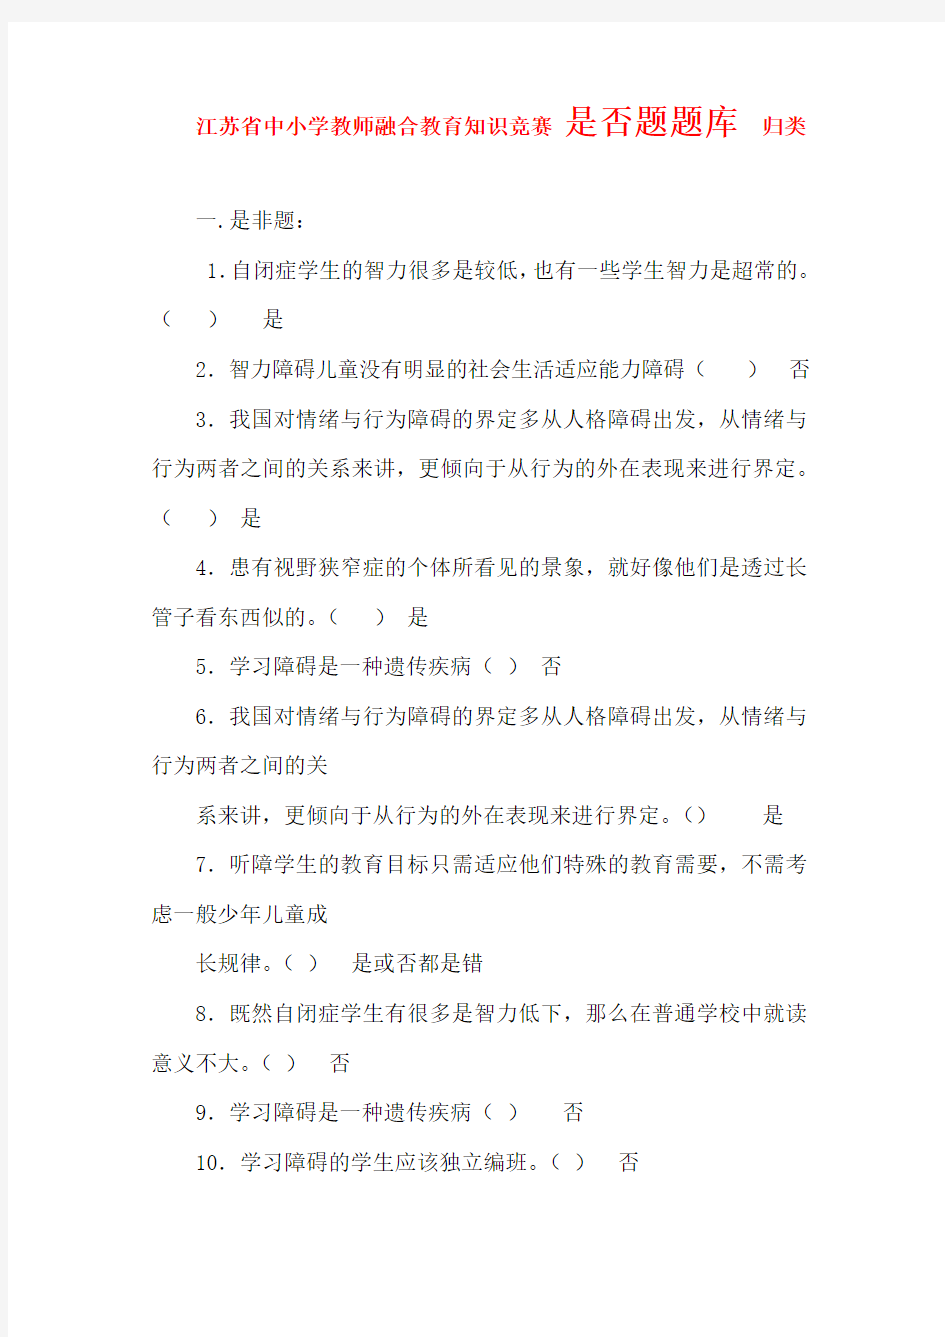 2015年最新最全 江苏省中小学教师融合教育知识竞赛 试题 判断题集锦